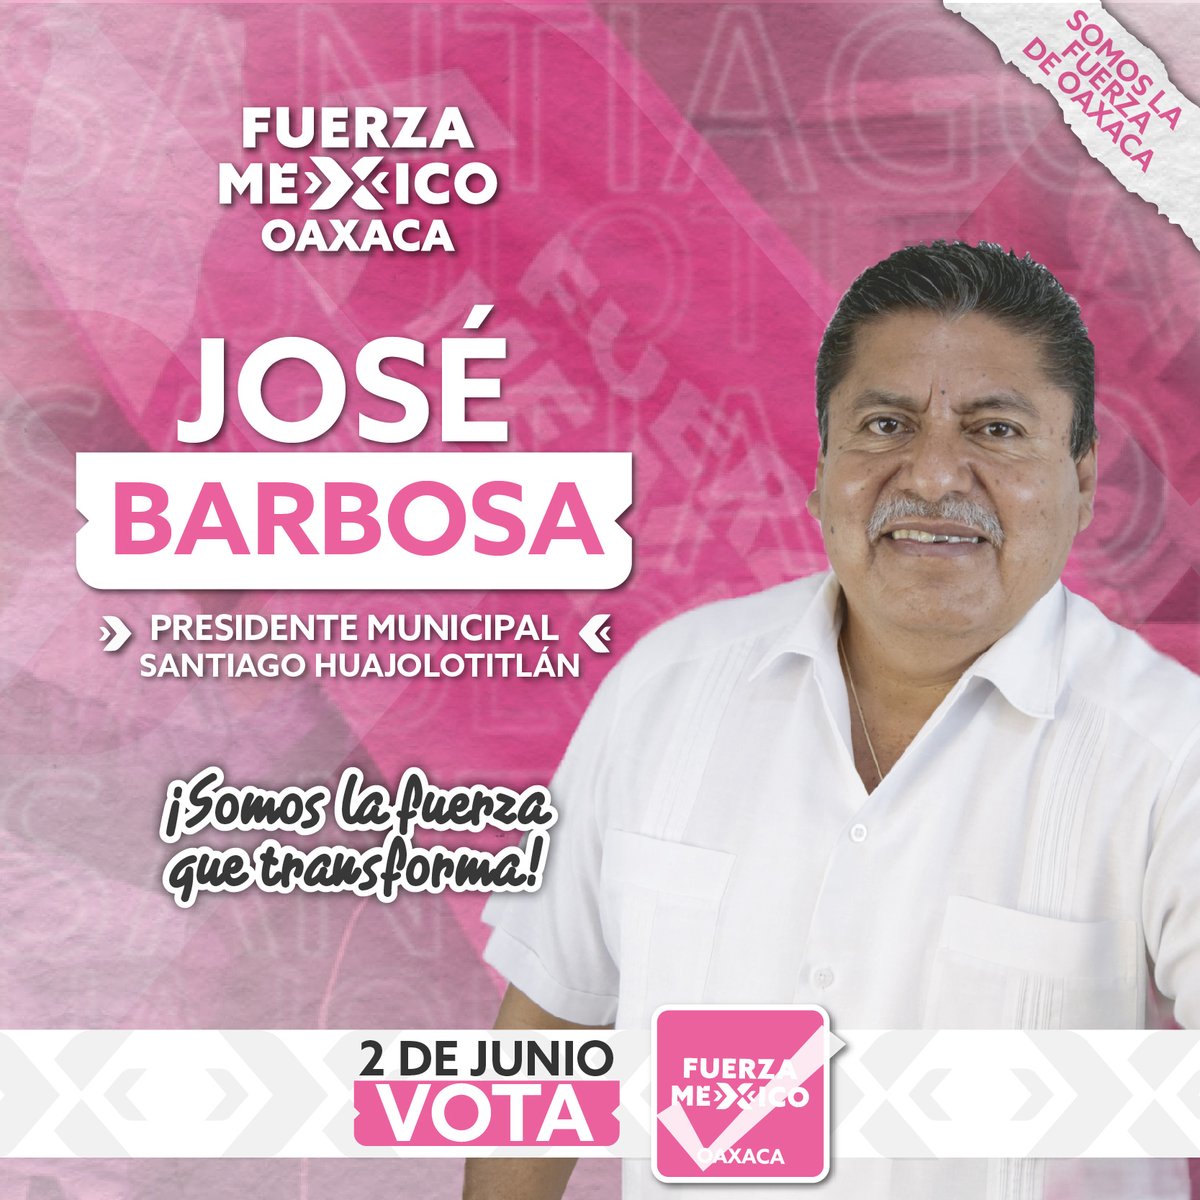 Este 2 de junio vota por José Guadalupe Barbosa para Presidente Municipal de Santiago Huajolotitlán.
“Vamos juntas y juntos a consolidar la 4Transformación de Huajolotitlán”
Vota por las y los candidatos de Fuerza por México Oaxaca.
#SomosLaFuerzaQueTransformaHuajolotitlán